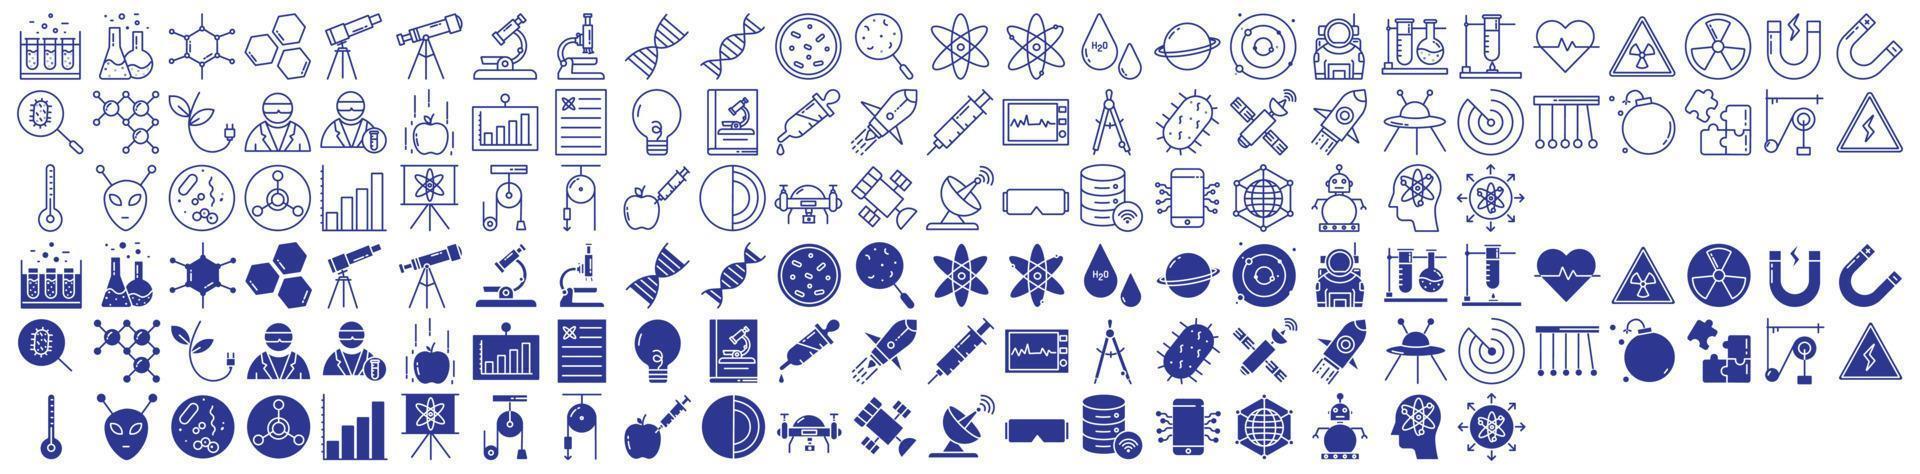 samling av ikoner relaterad till vetenskap och teknologi, Inklusive ikoner tycka om elektron, laboratorium, forskning, energi och Mer. vektor illustrationer, pixel perfekt